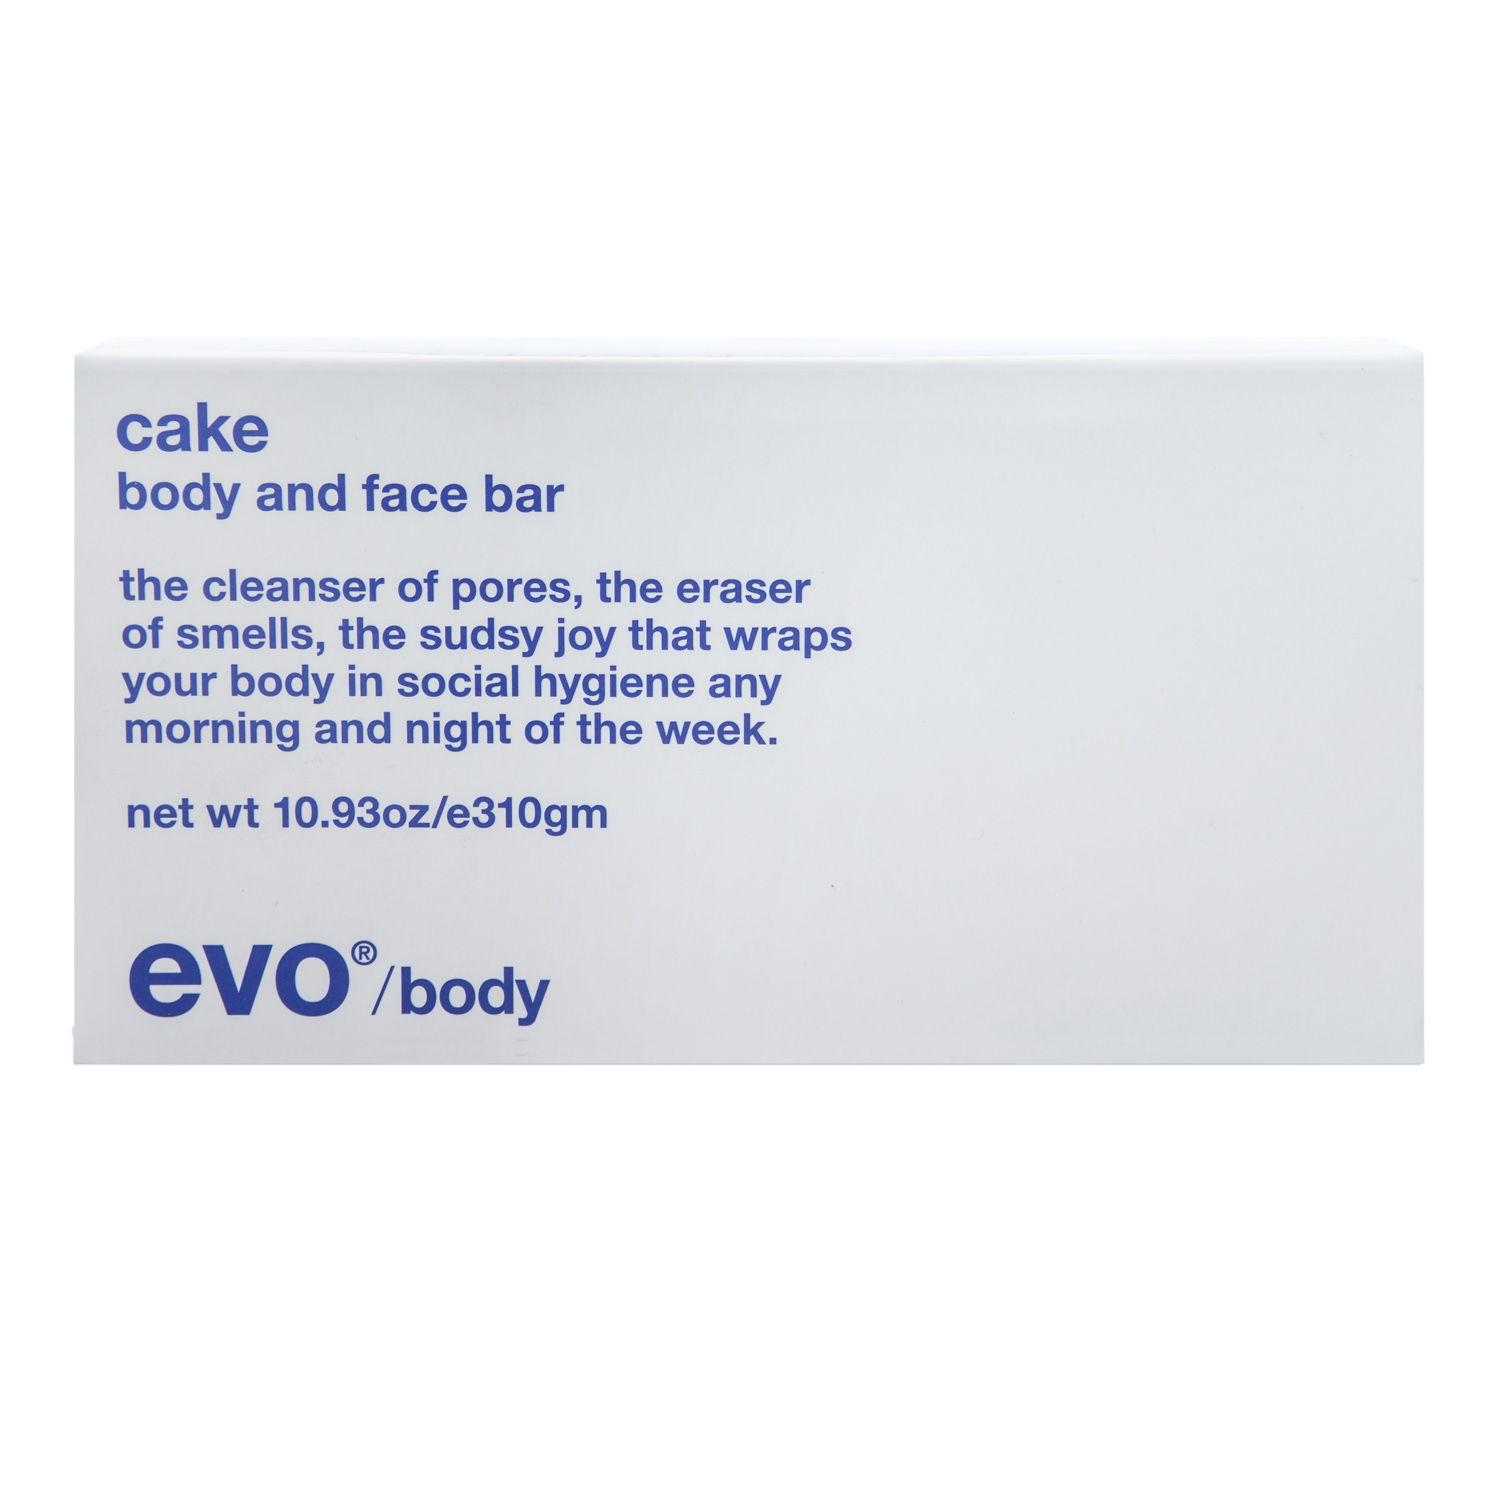 EVO Увлажняющее мыло [кусок] для лица и тела, 310 г (EVO, body and face) увлажняющее мыло для лица и тела evo cake body and face bar 310 мл